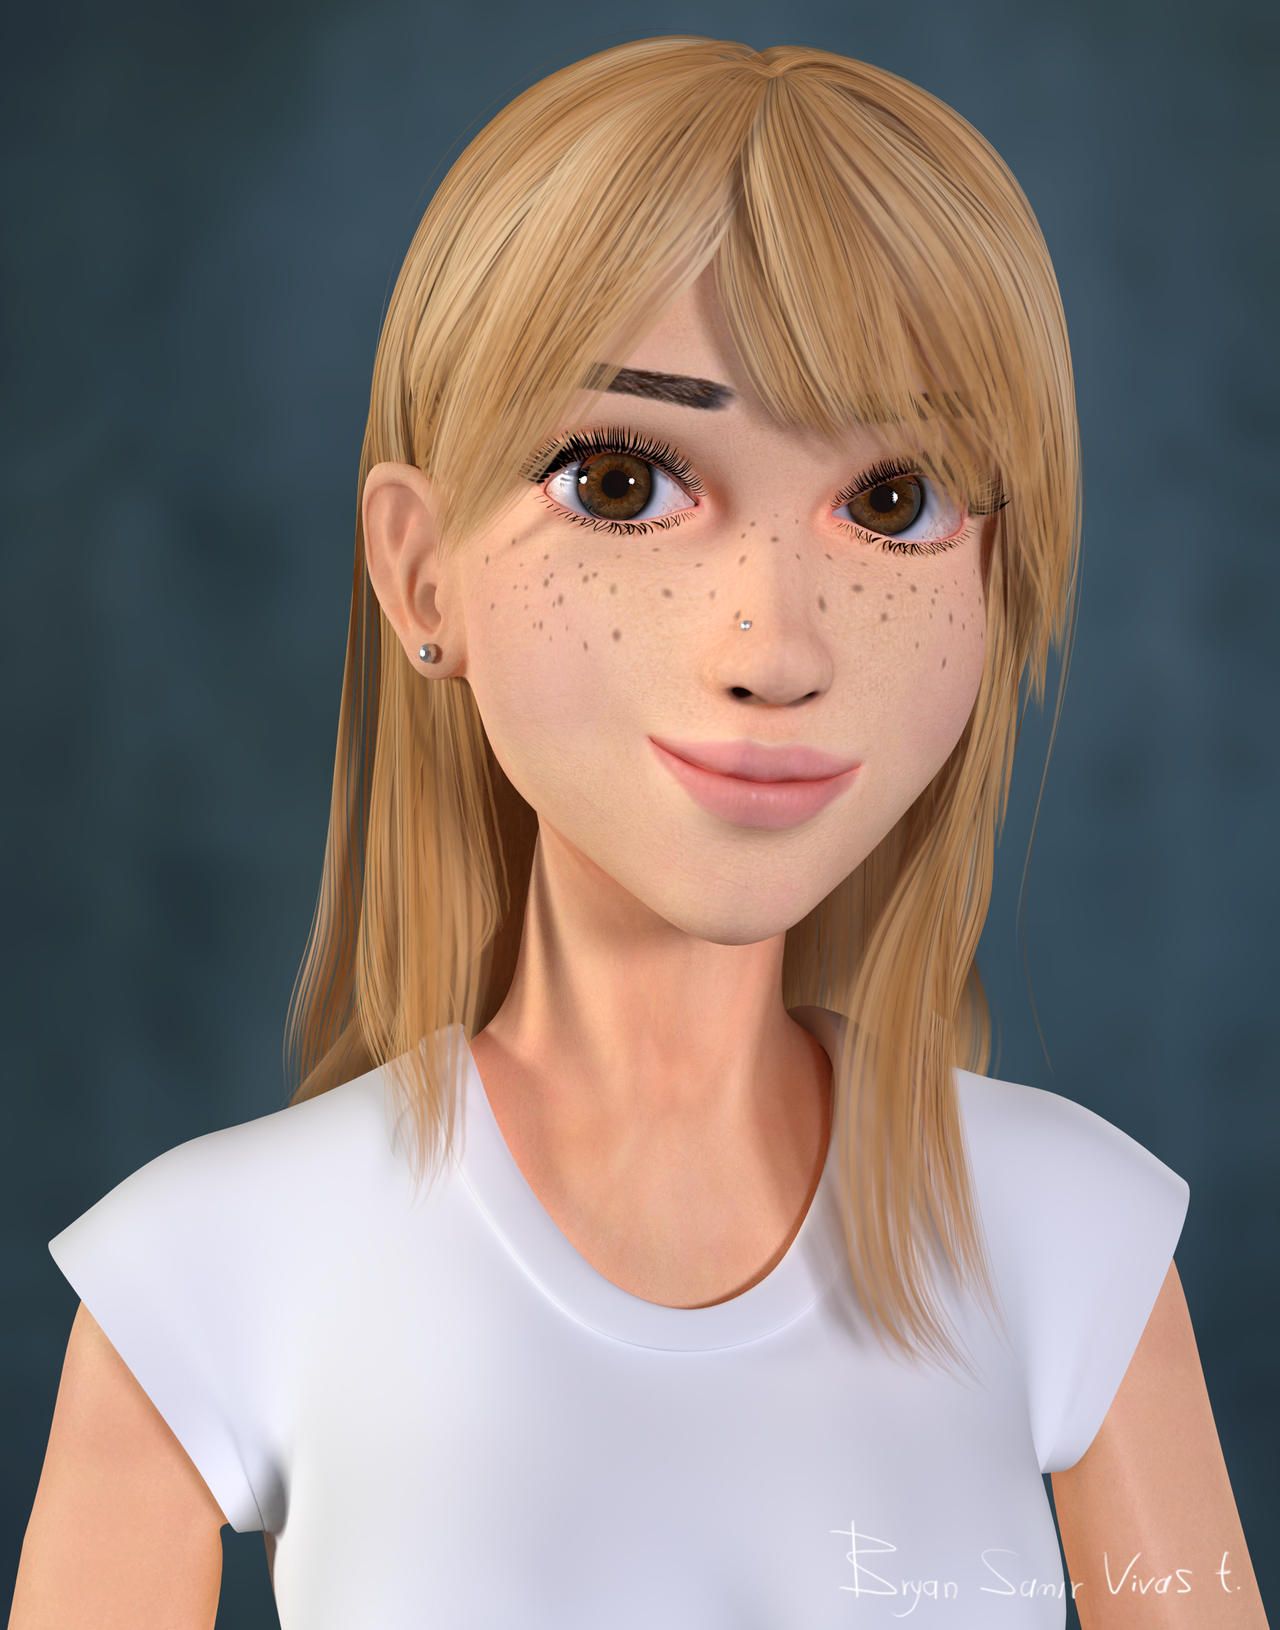 3D Stylized Girl made with Blender by bryansvt92 on DeviantArt